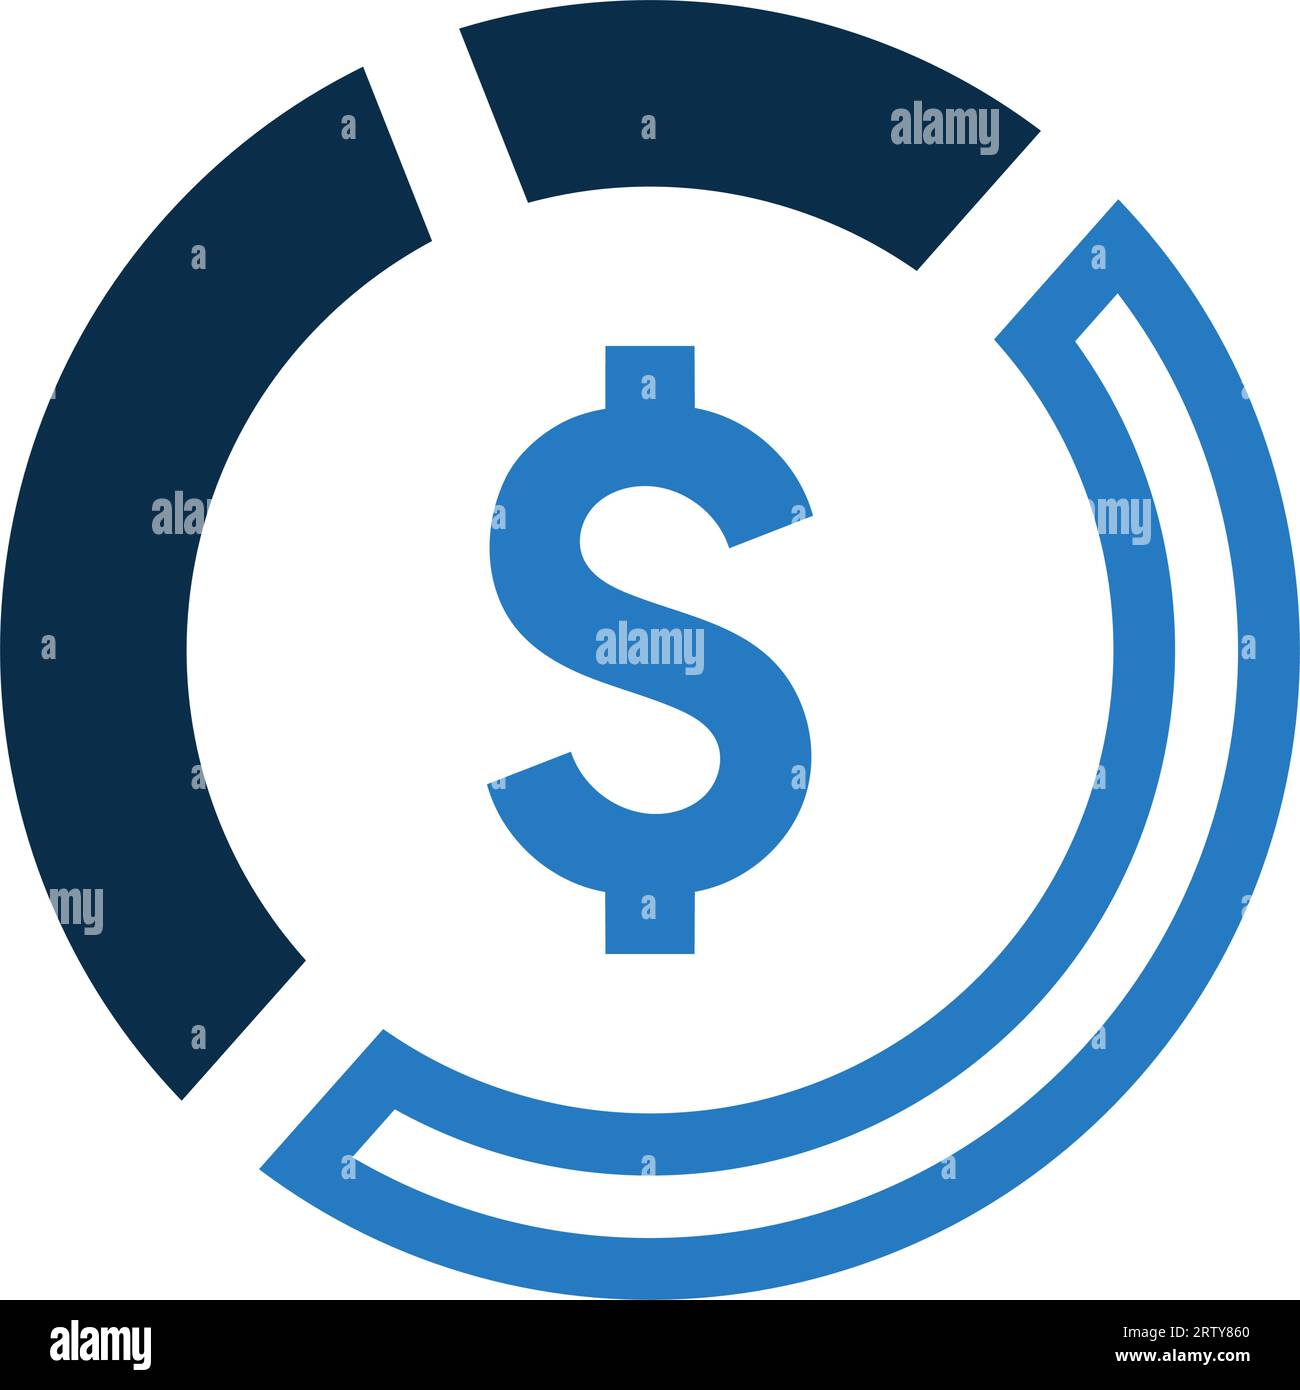 Icône Money Pie Chart - utilisation parfaite pour les fichiers imprimés et les présentations, la conception et le développement de sites Web, de matériel promotionnel, d'illustrations ou tout autre Illustration de Vecteur